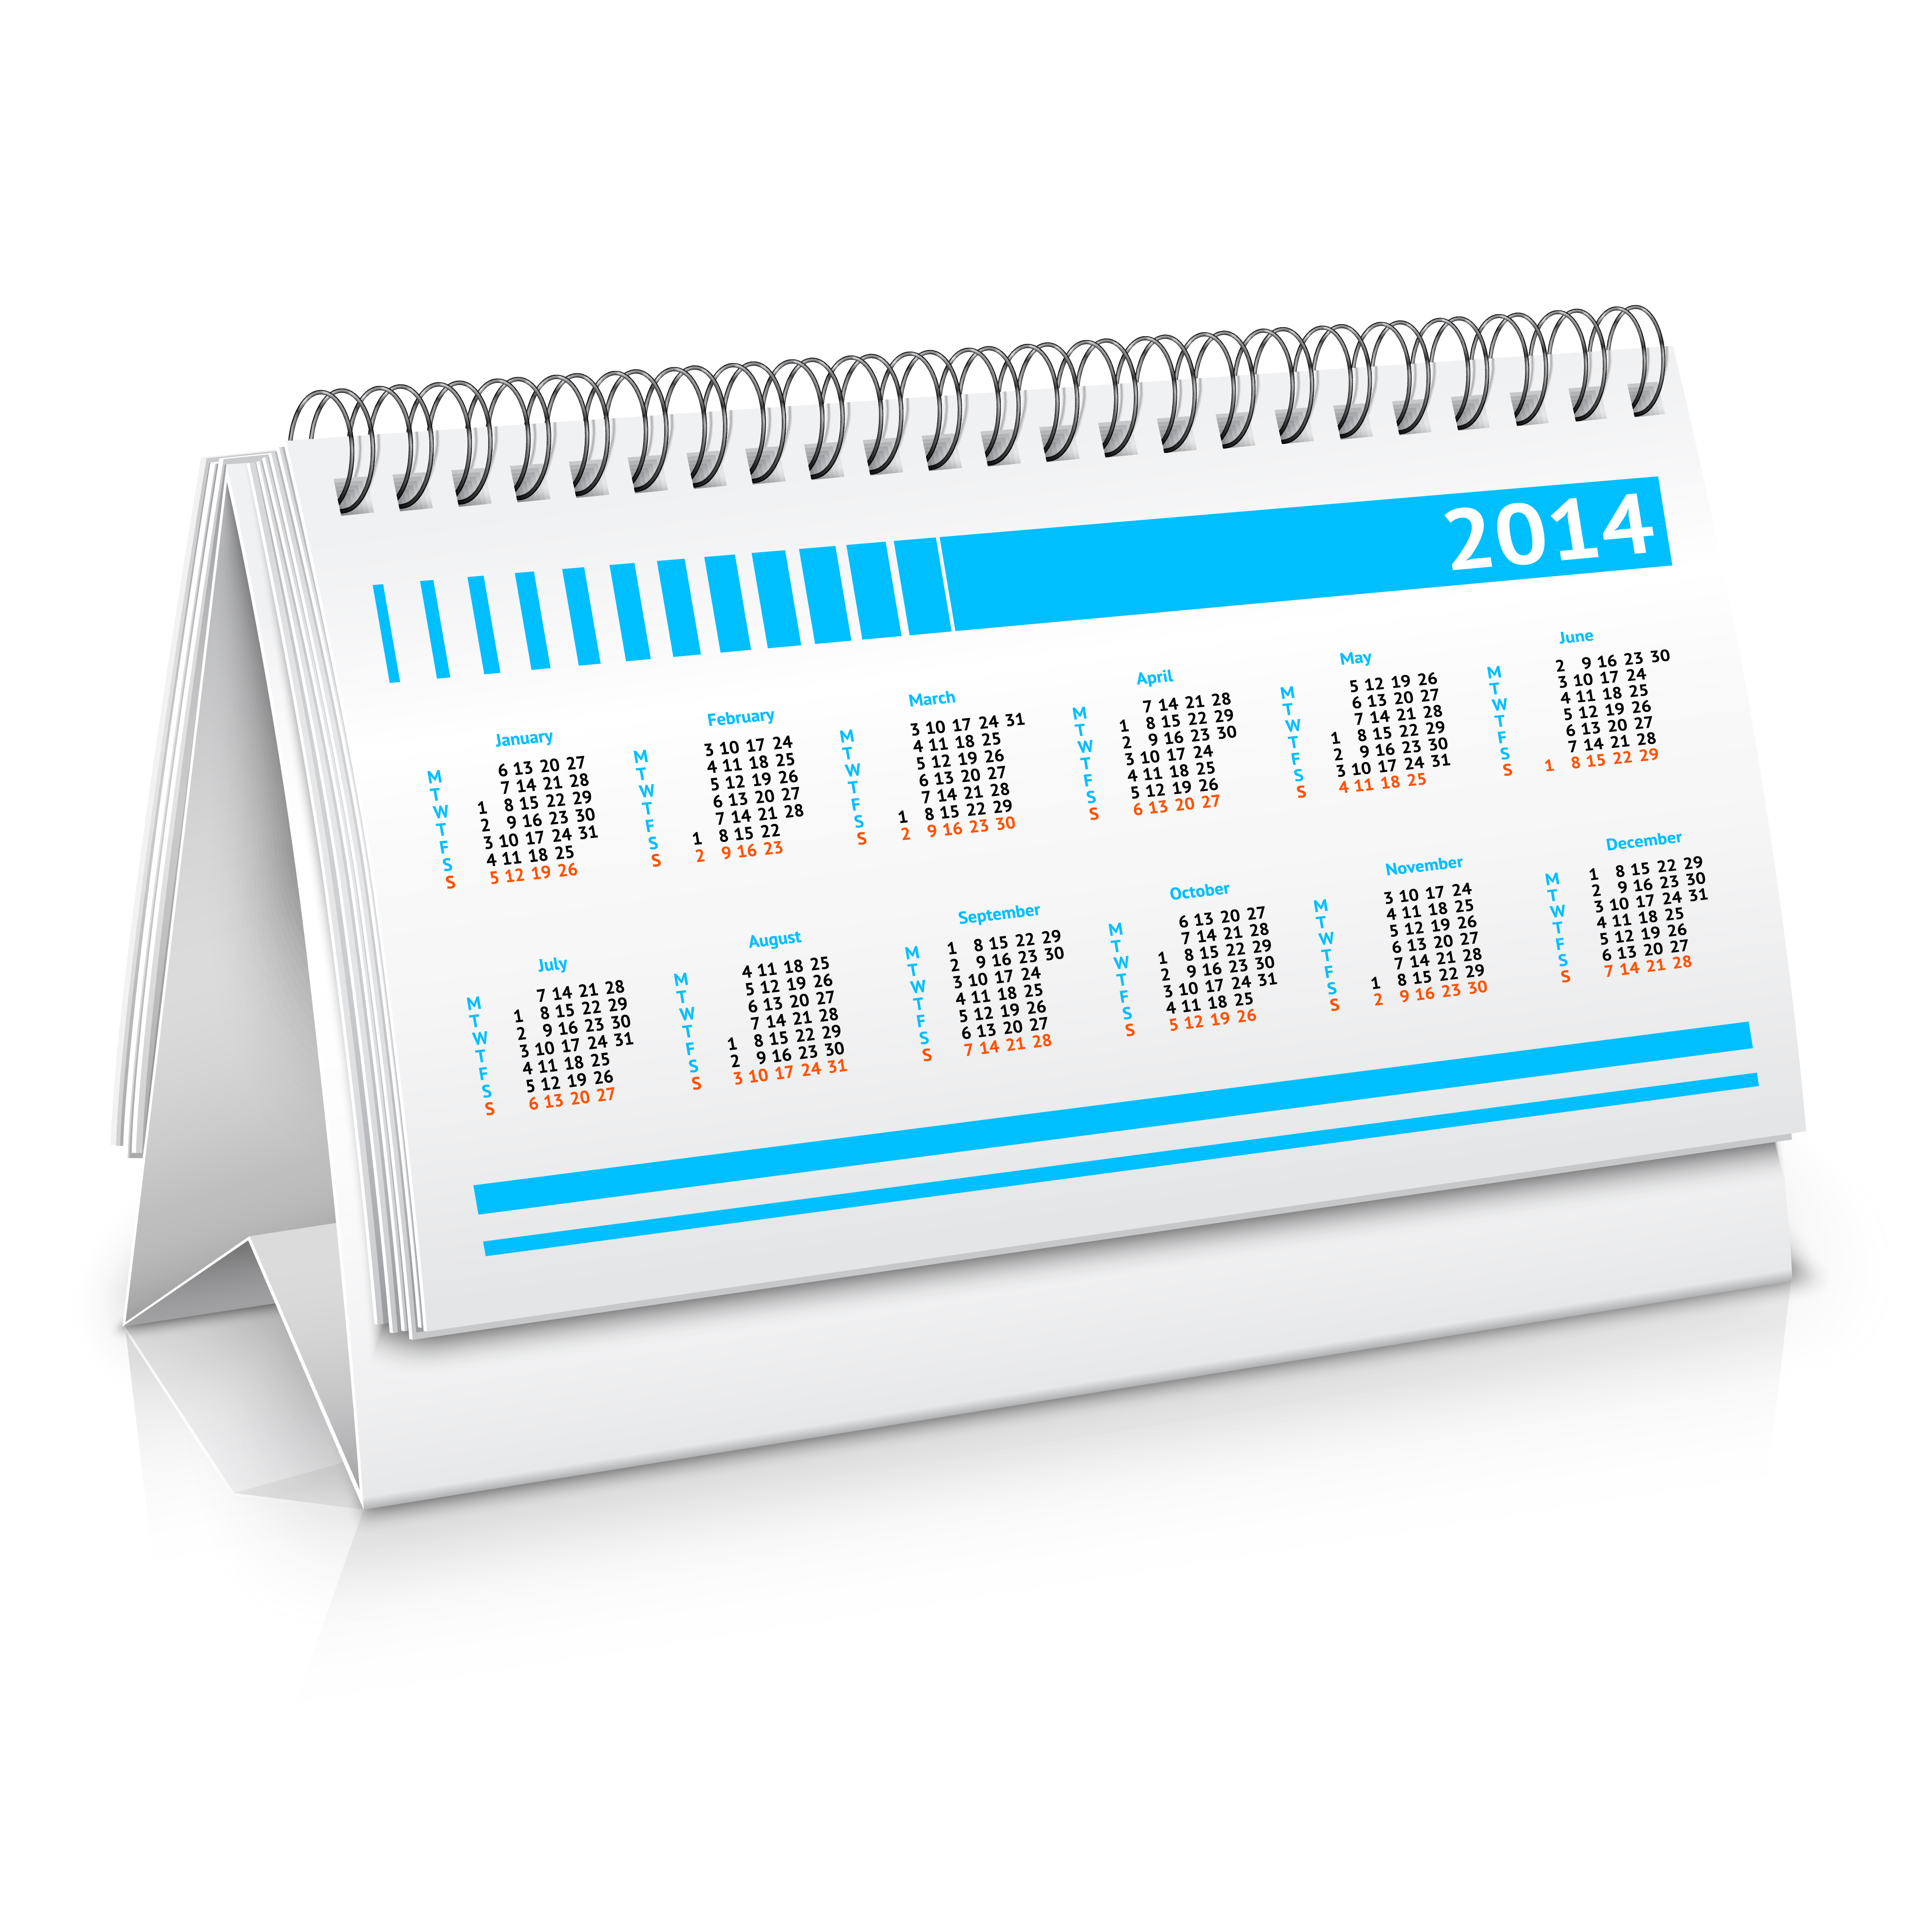 Download Desk calendar mockup - Download Free Vectors, Clipart Graphics & Vector Art